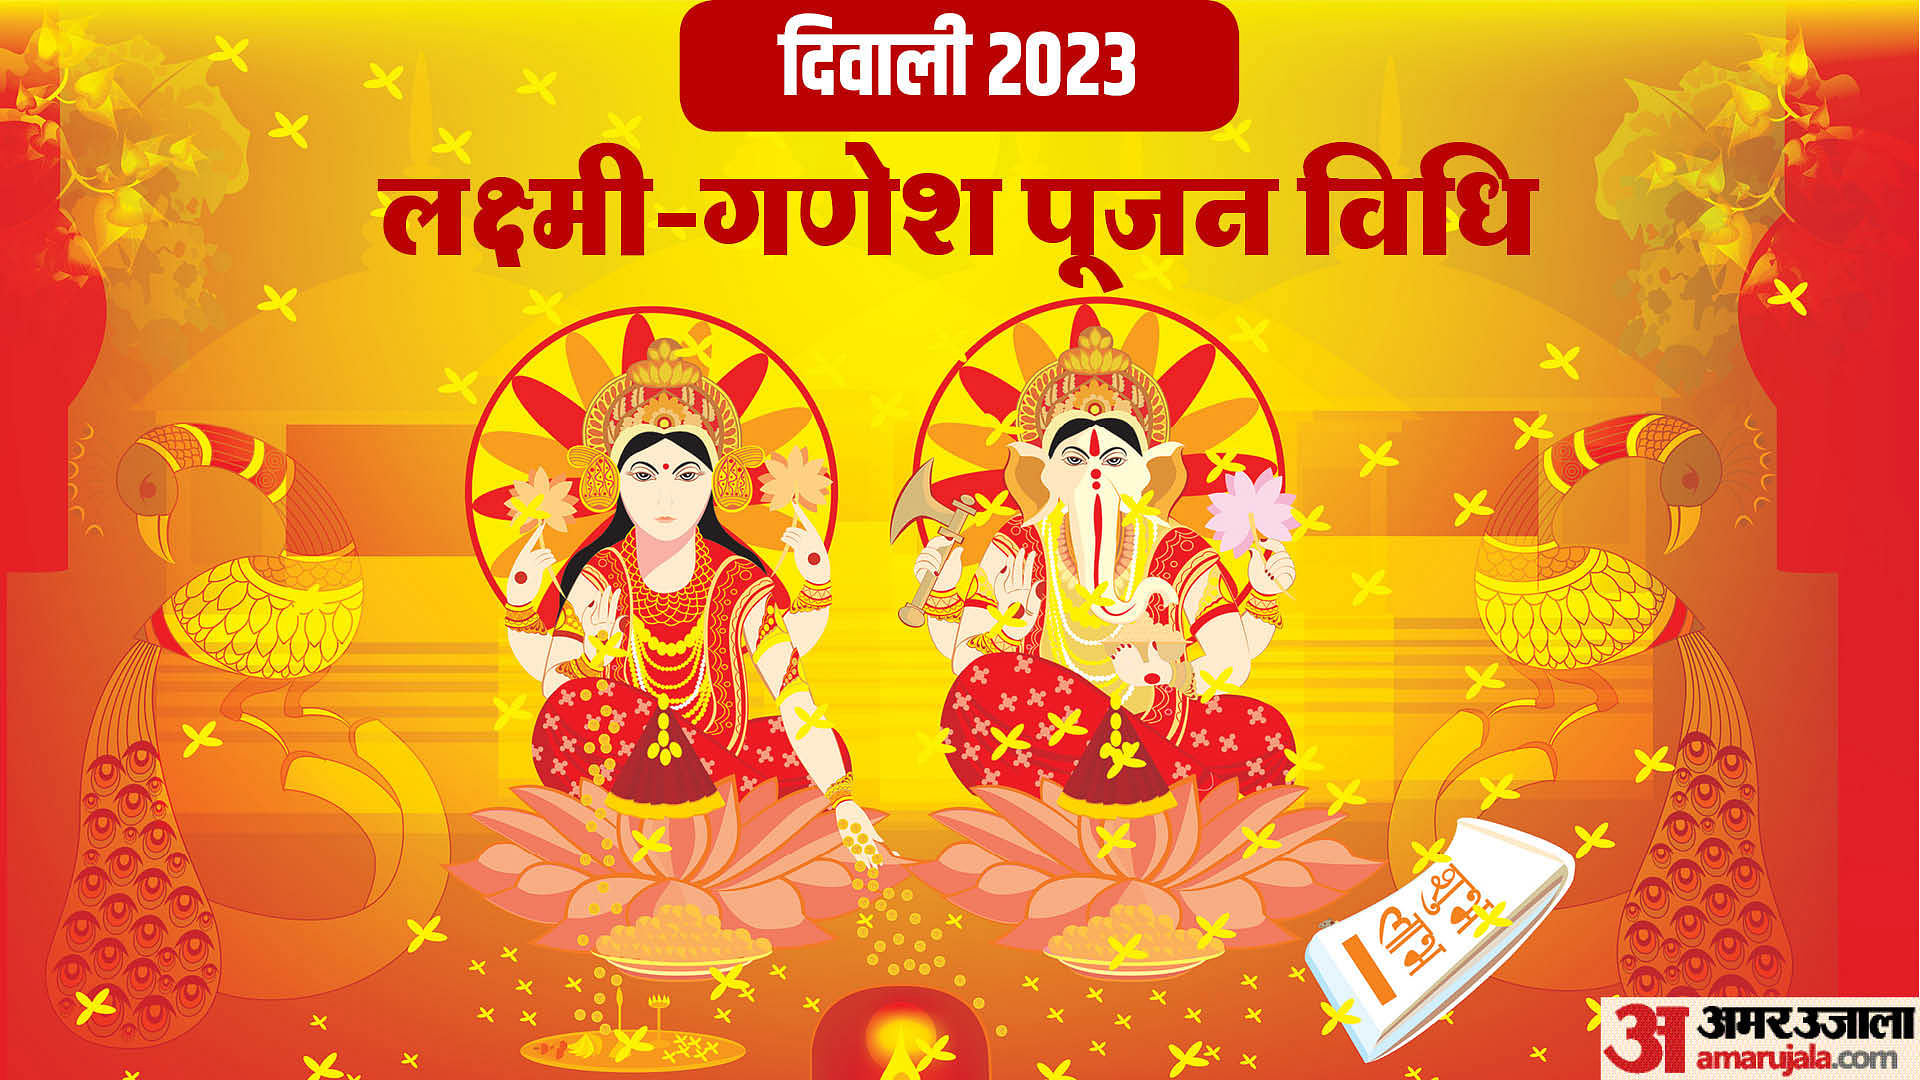 Diwali 2023 Puja Vidhi दिवाली की रात इस विधि से करें लक्ष्मी गणेश पूजन सुख सौभाग्य की होगी 1643